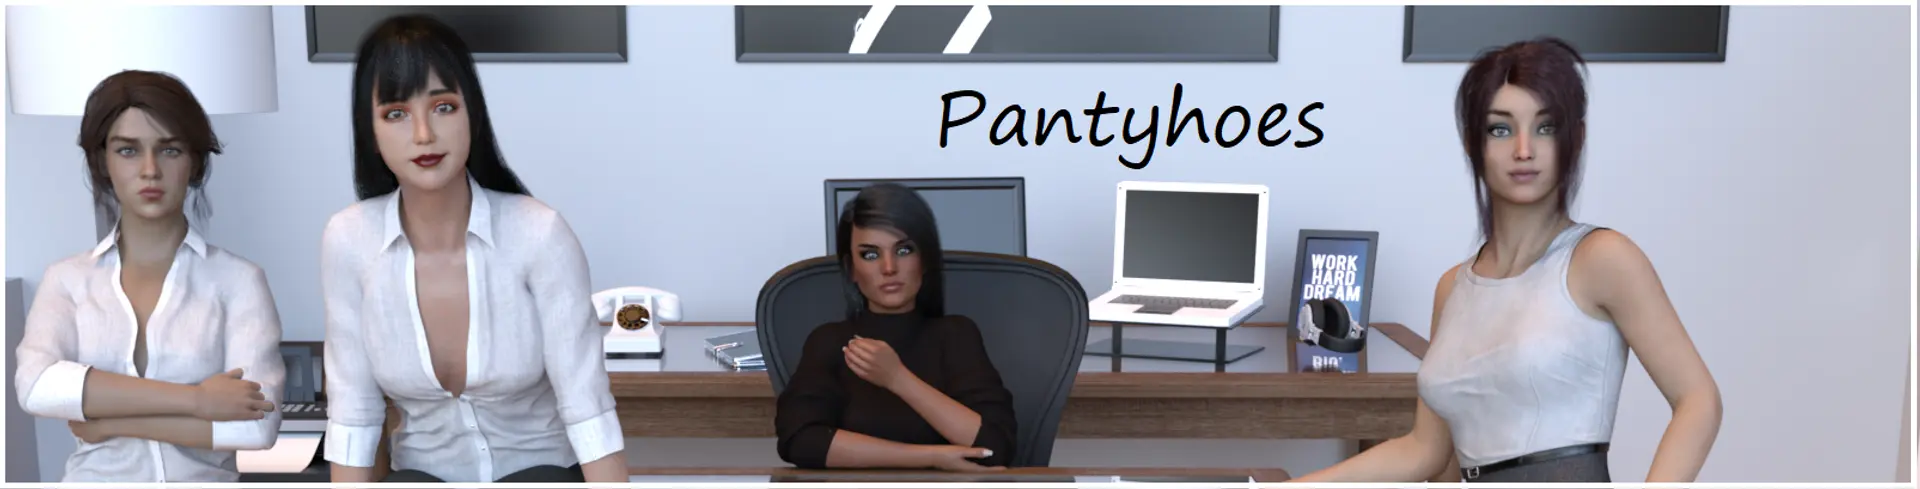 Pantyhoes [v0.4] main image